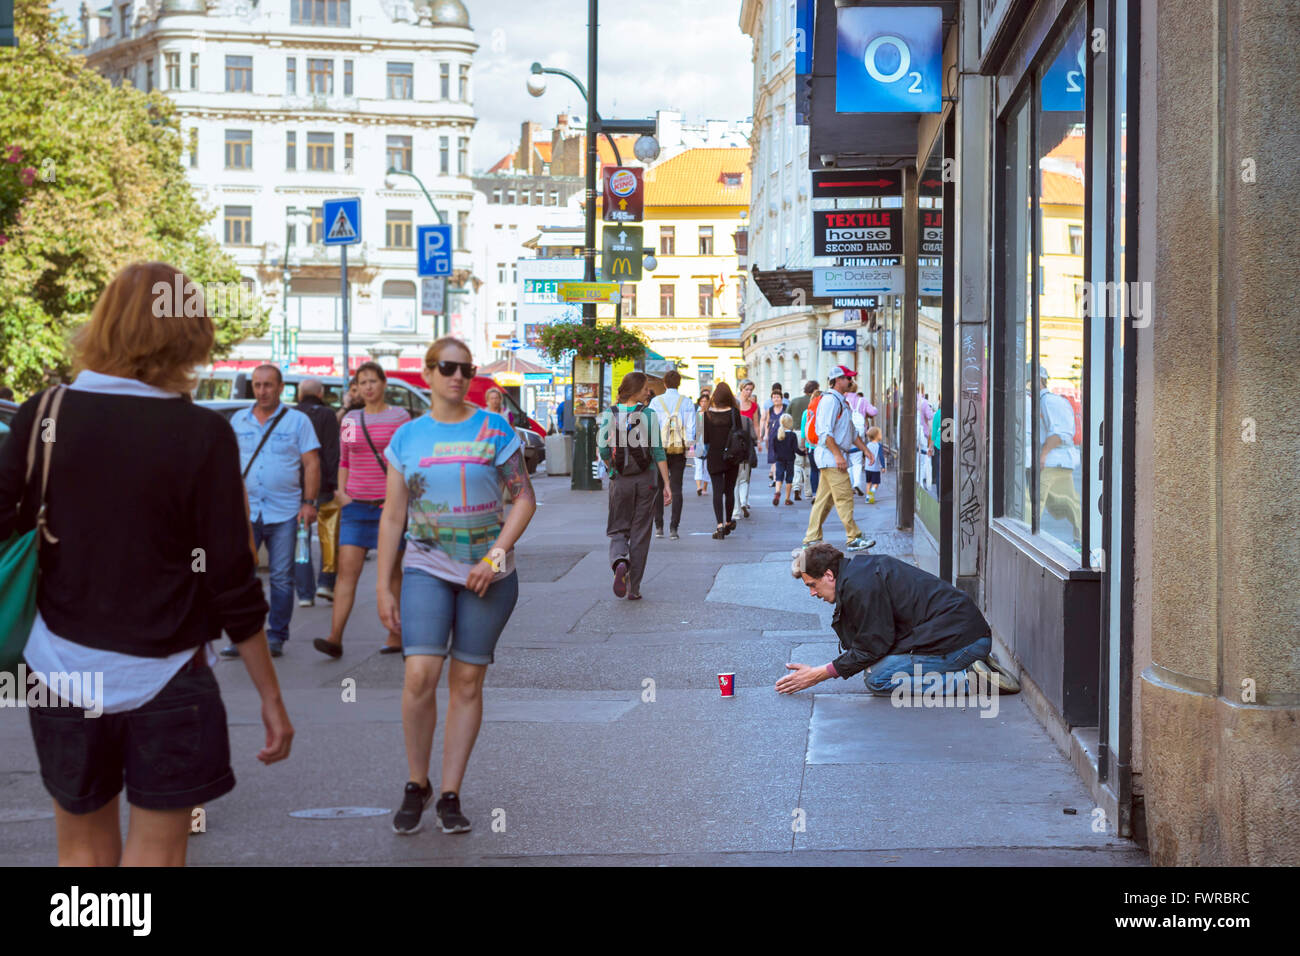 PRAGUE, CZECH REPUBLIC - AUGUST 25, 2015: Homeless beggar is begging on a busy street in the center of Prague, Czech Republic Stock Photo